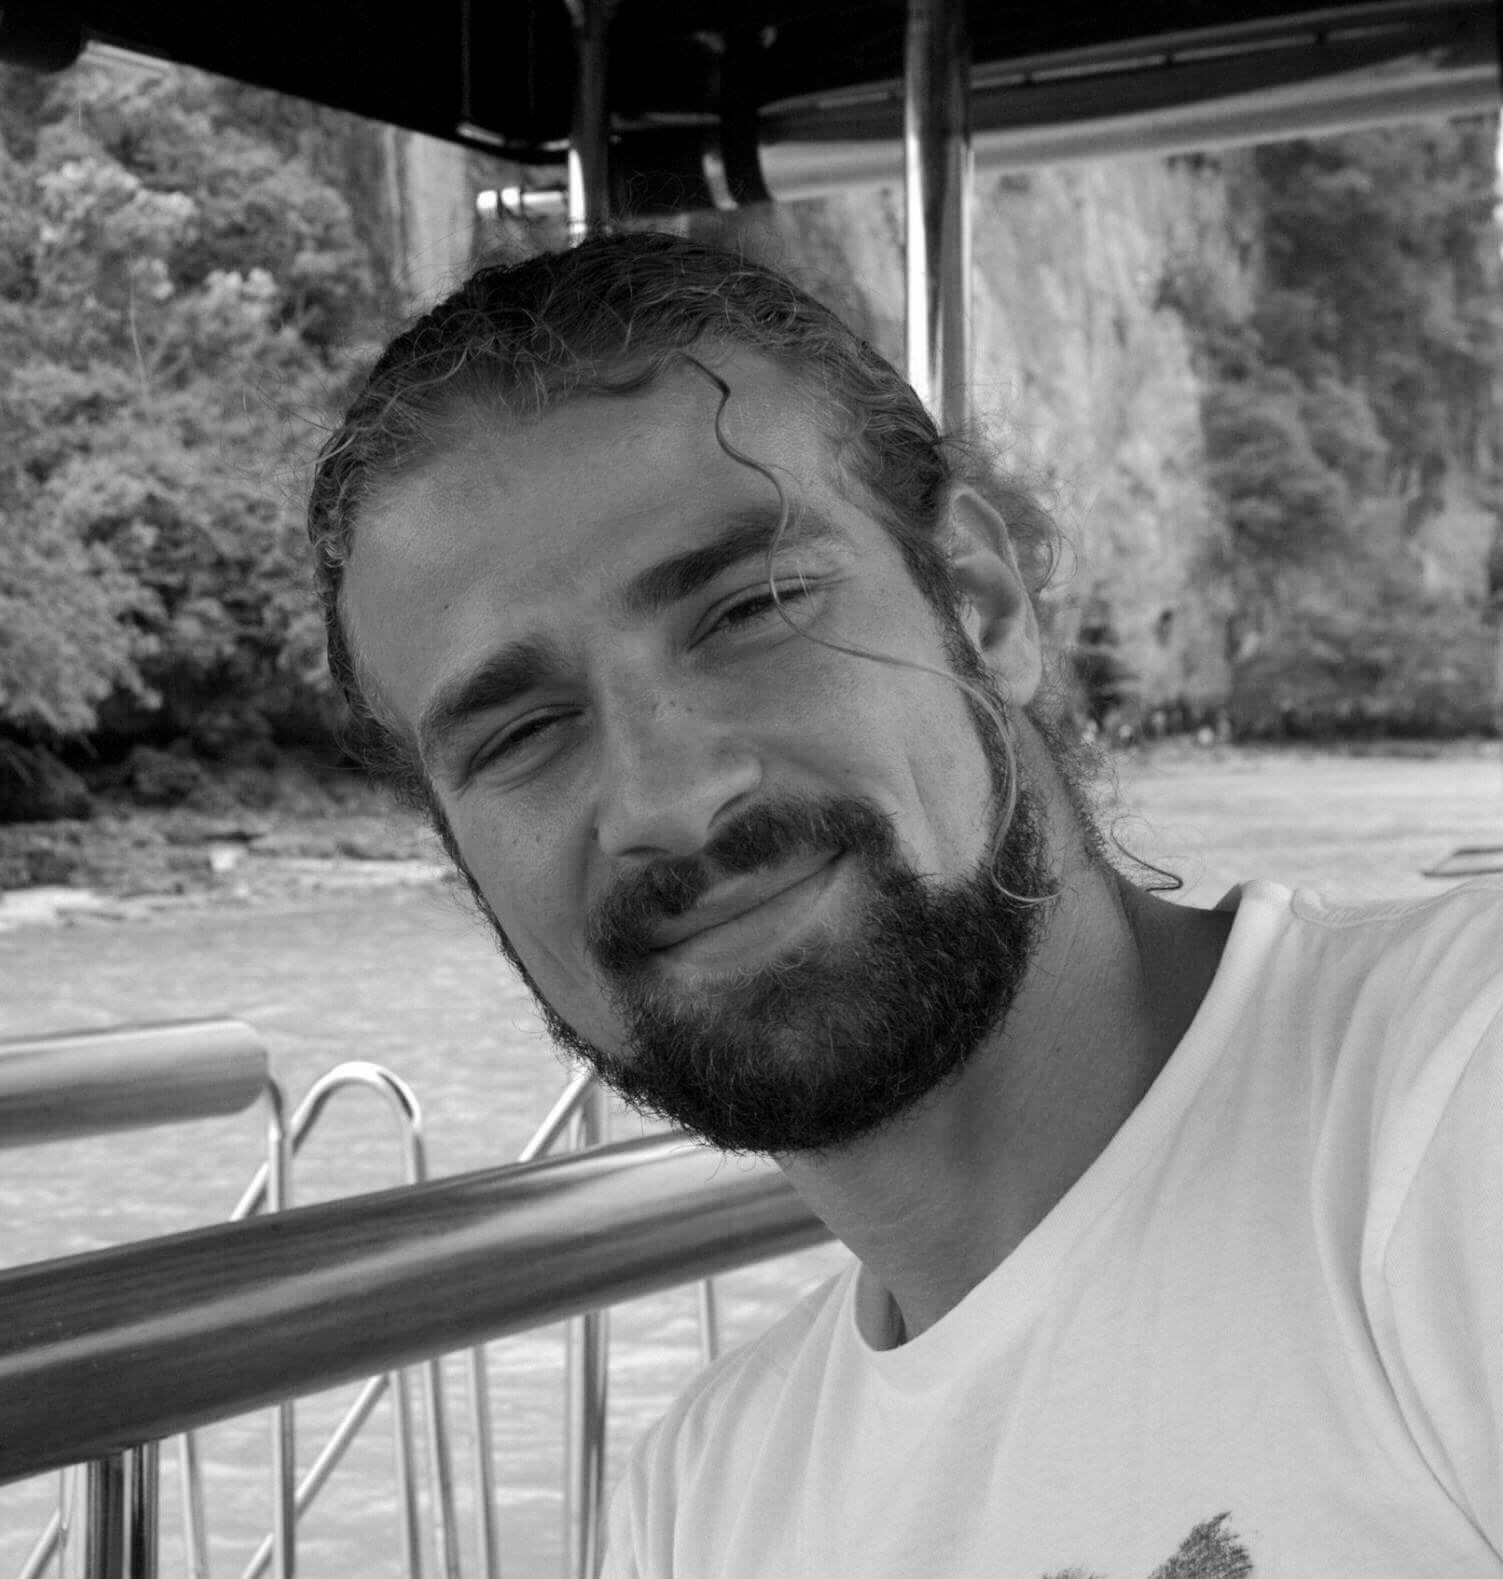 La Justicia italiana dicta sentencia: Mario Biondo fue asesinado